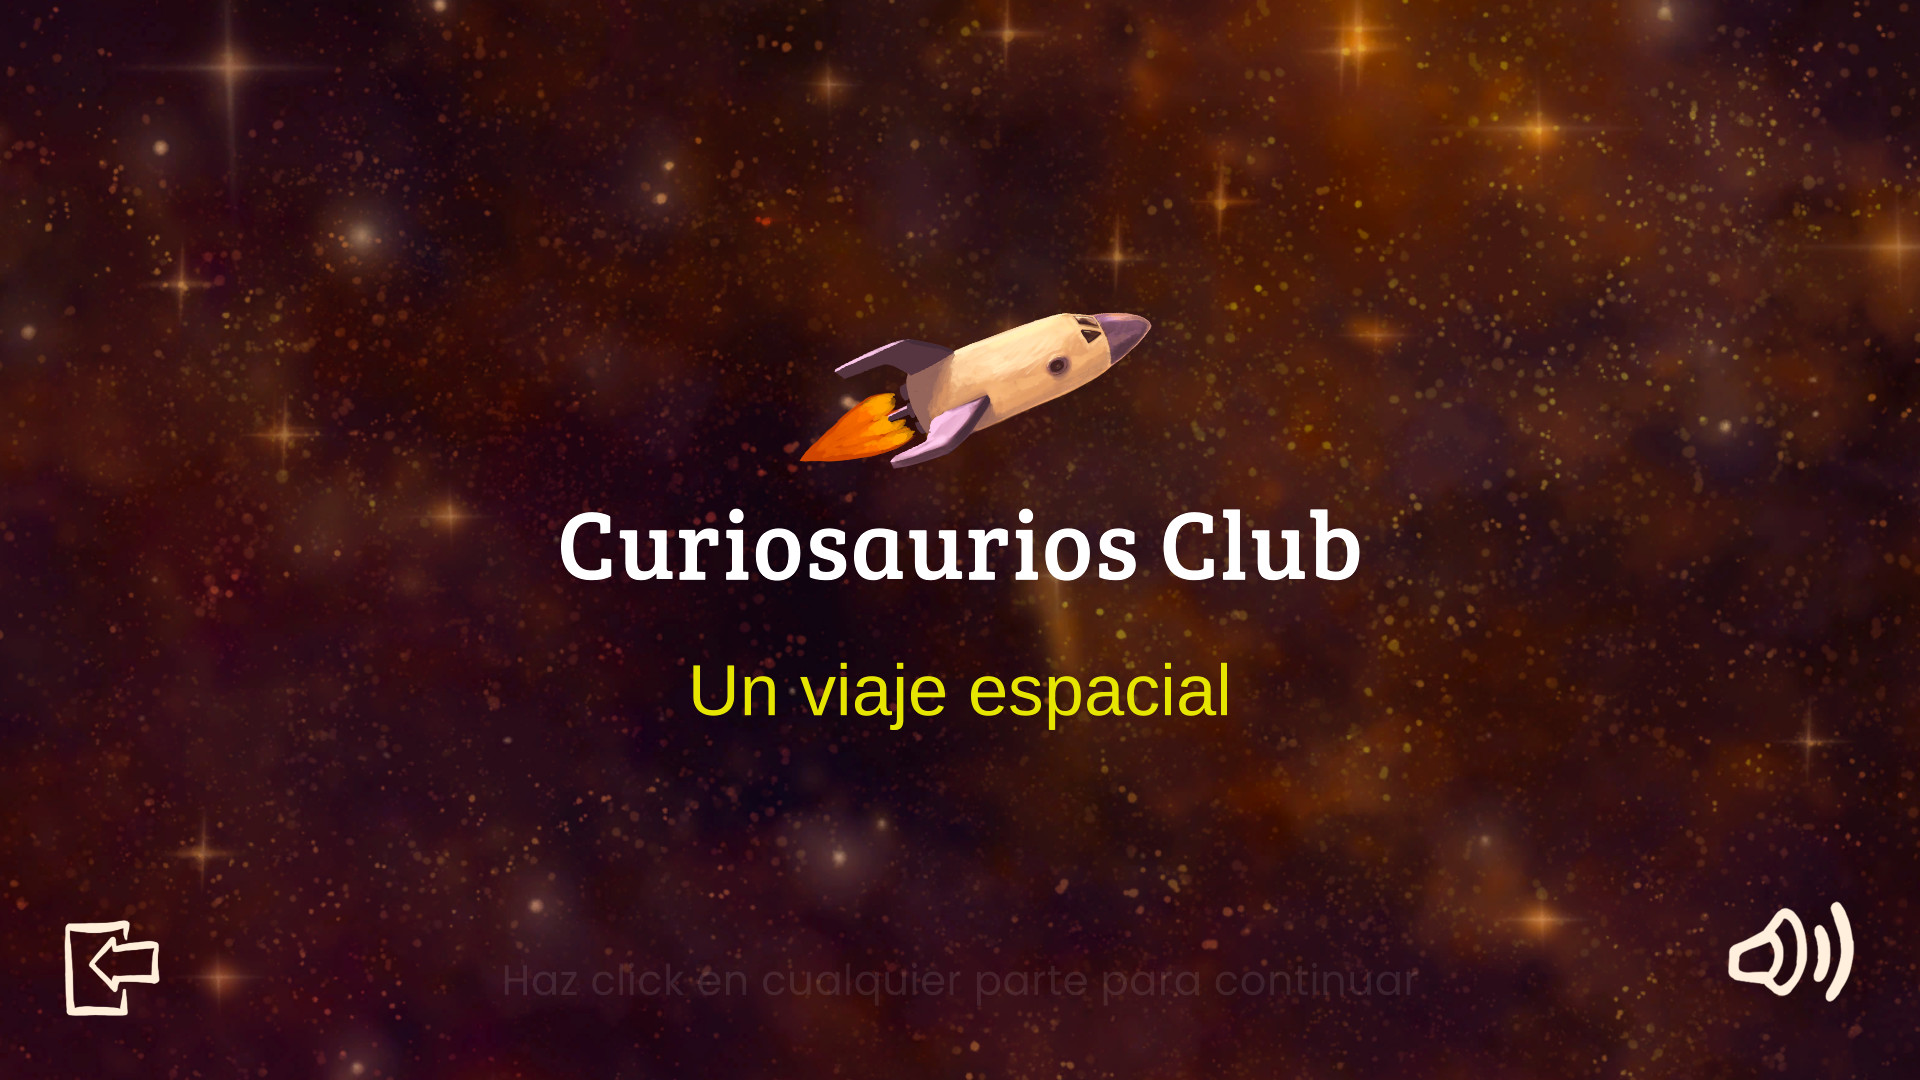 Curiosaurios Club. Un viaje espacial screenshot